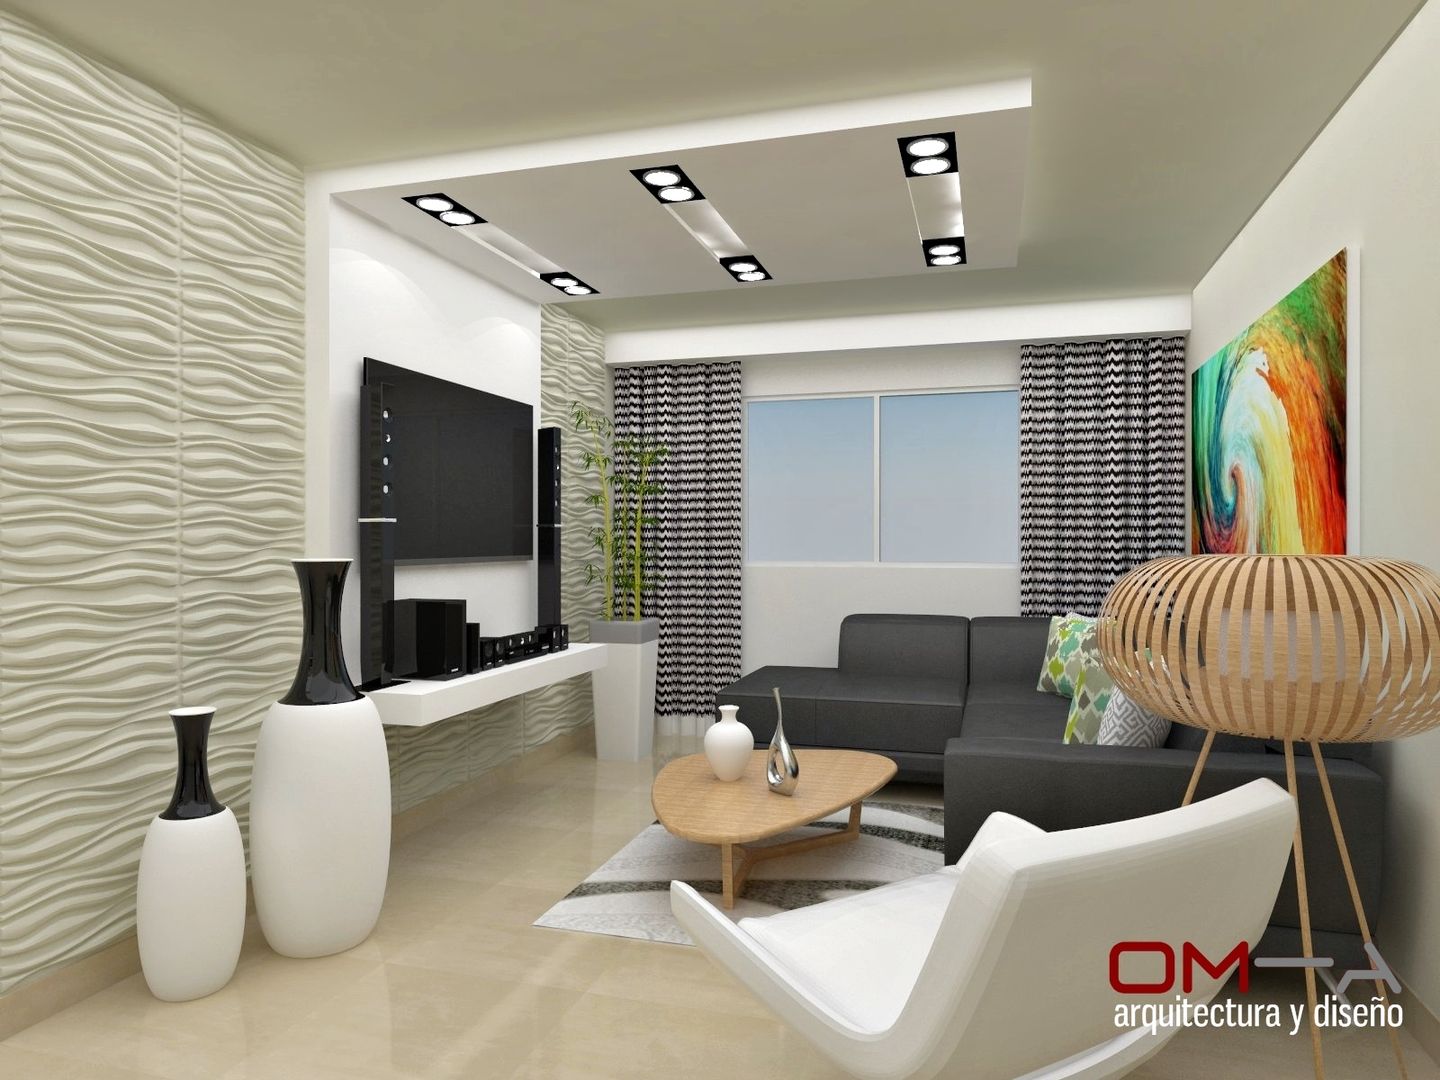 Diseño interior en apartamento , om-a arquitectura y diseño om-a arquitectura y diseño Modern Oturma Odası